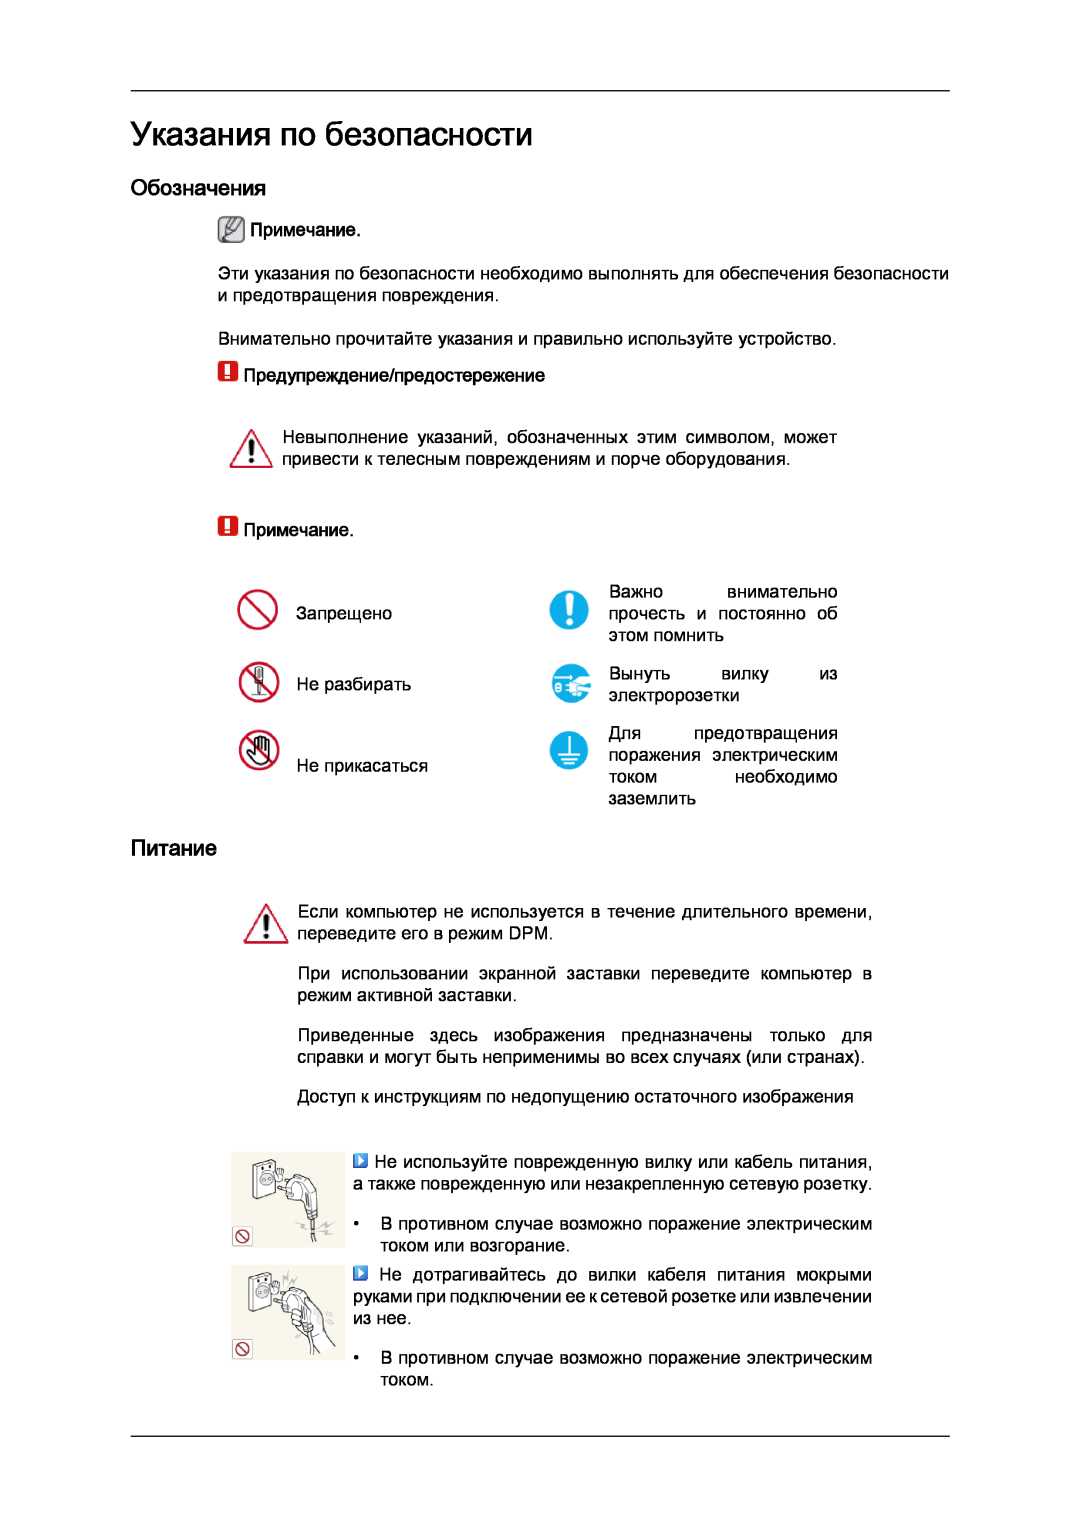 Samsung LH32CRTMBC/EN manual Указания по безопасности, Обозначения, Питание, Примечание, Предупреждение/предостережение 